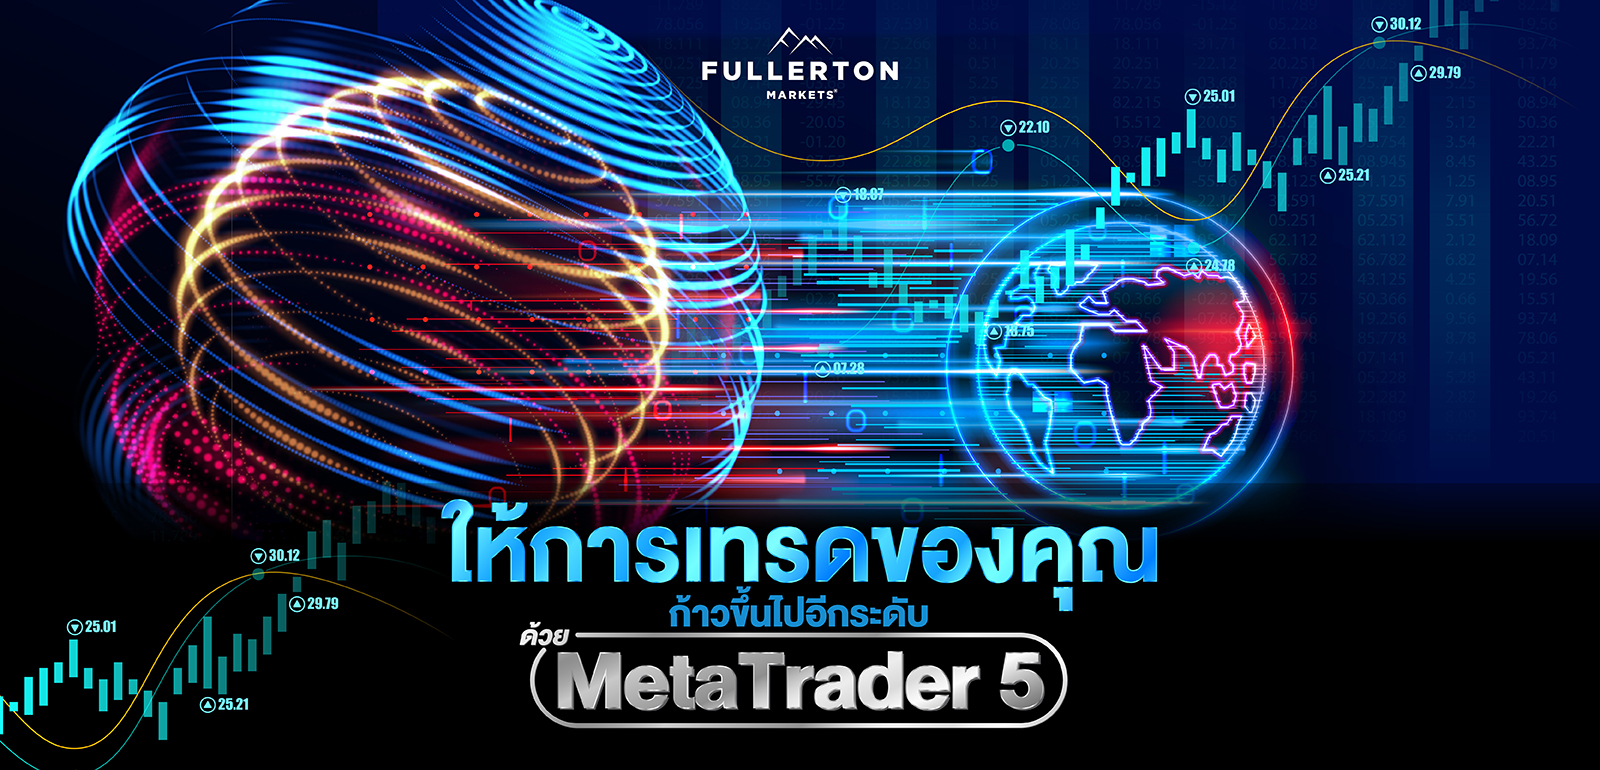 Fullerton Markets MT5